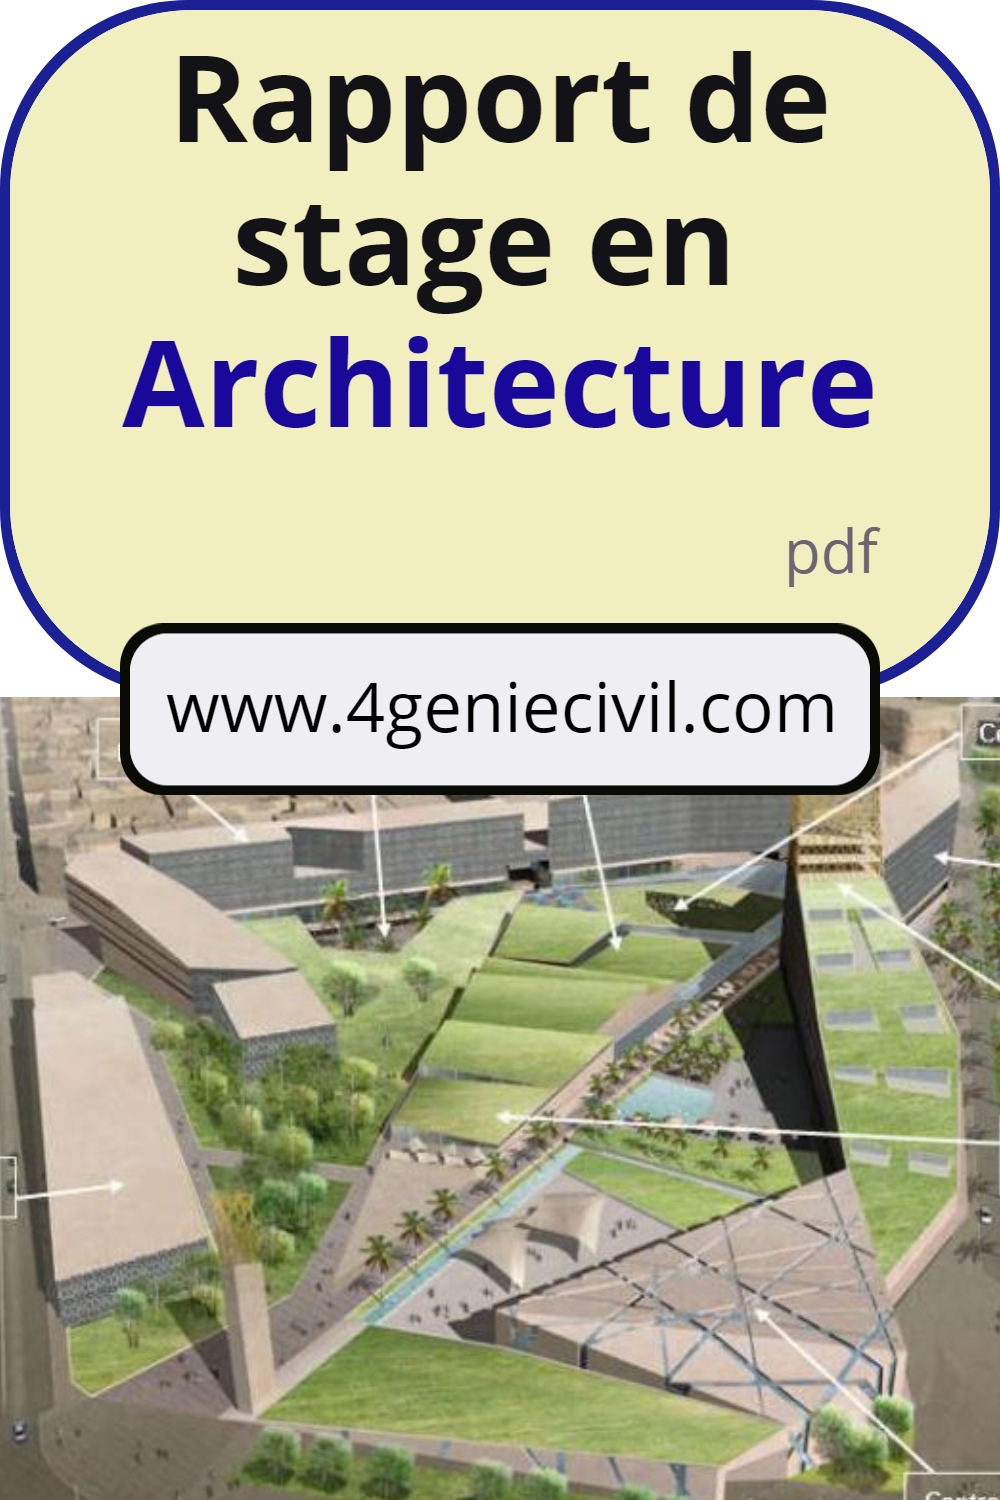 rapport de stage architecture pdf, rapport de stage architecture master, rapport de stage architecture licence, rapport de stage architecture,